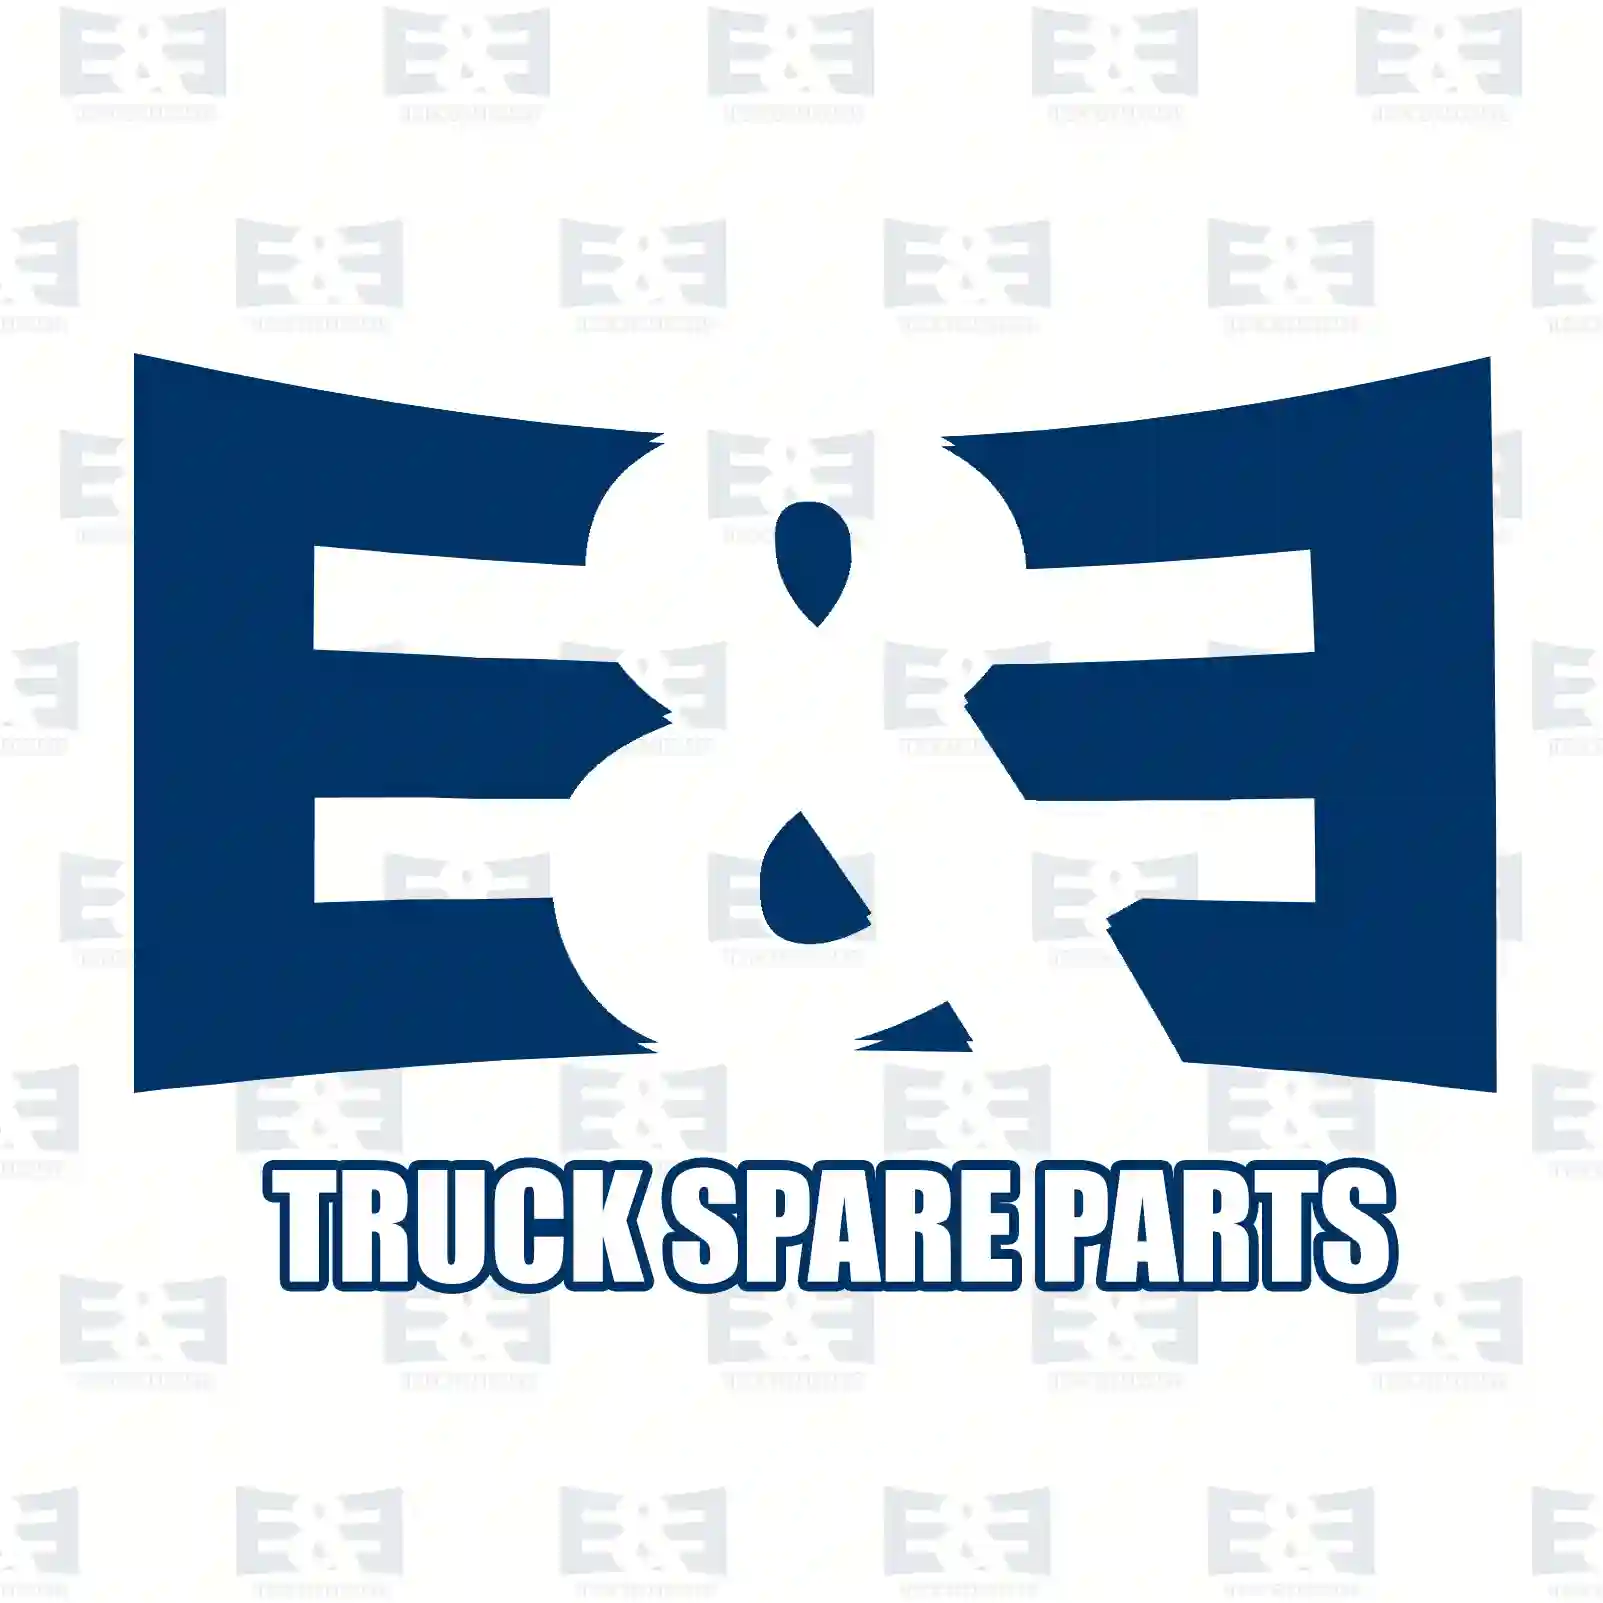  Rivet nut || E&E Truck Spare Parts | Truck Spare Parts, Auotomotive Spare Parts